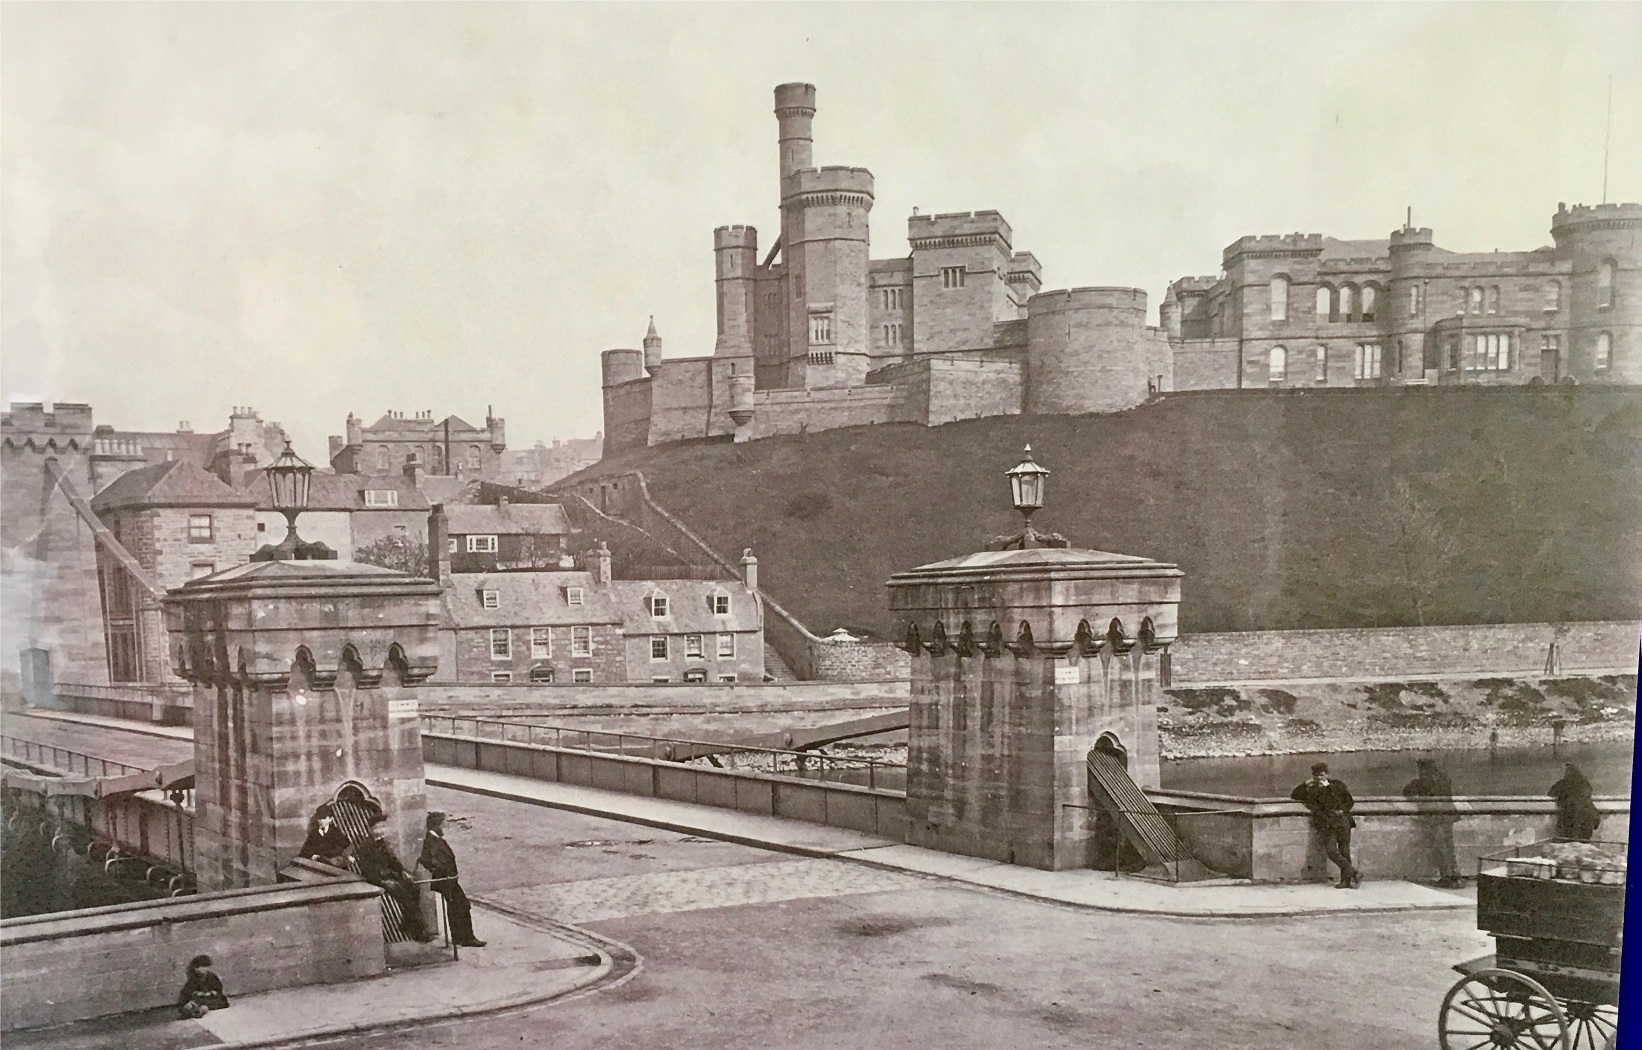 Council fills out Inverness Castle transformation details